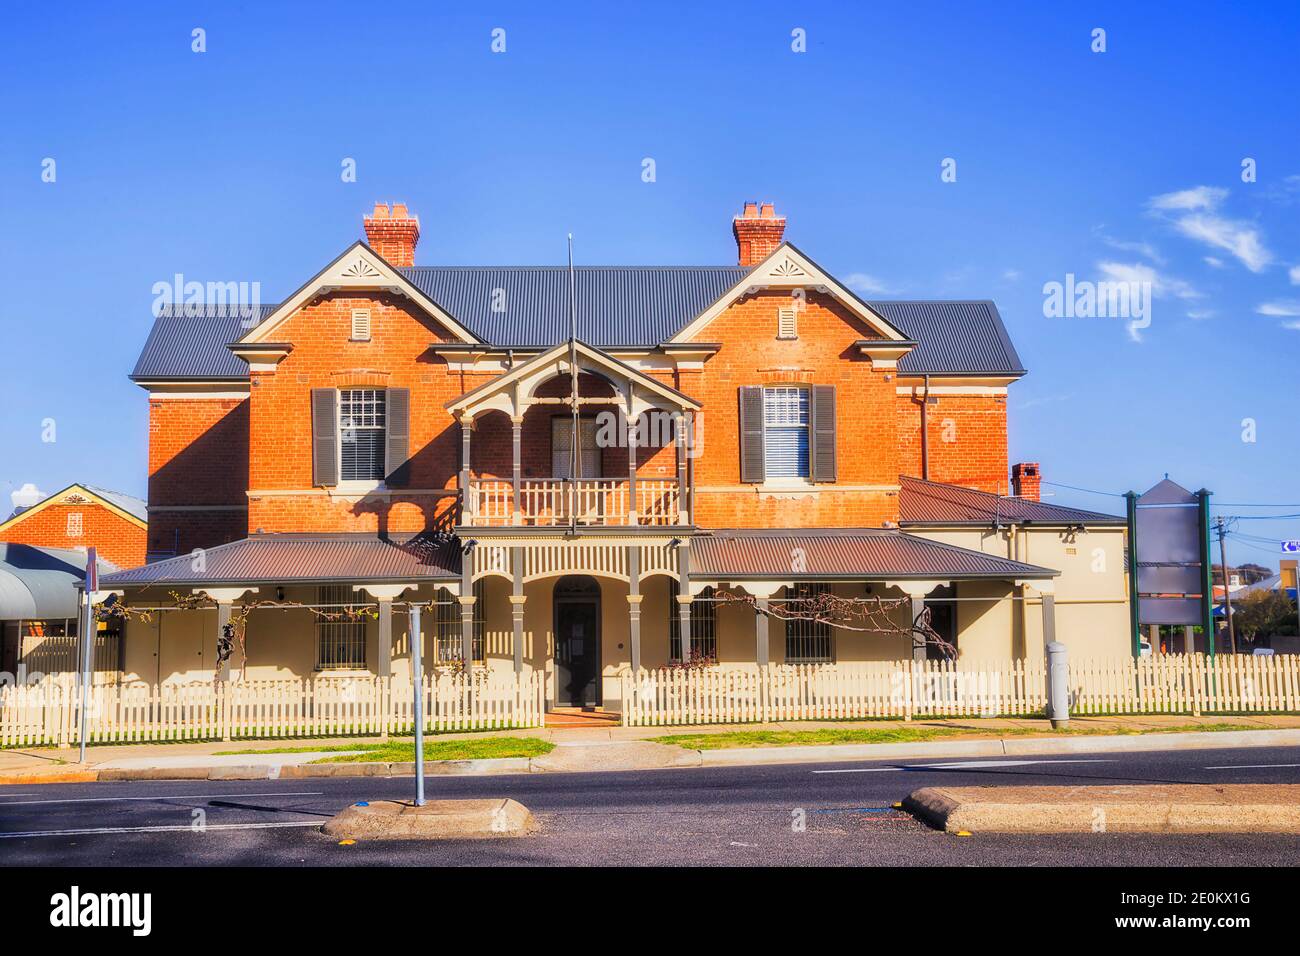 Facciata di una casa di servizi e affari locale che si affaccia sulla strada locale nella città di Bathurst in Australia - tradizionale architettura regionale bassa. Foto Stock